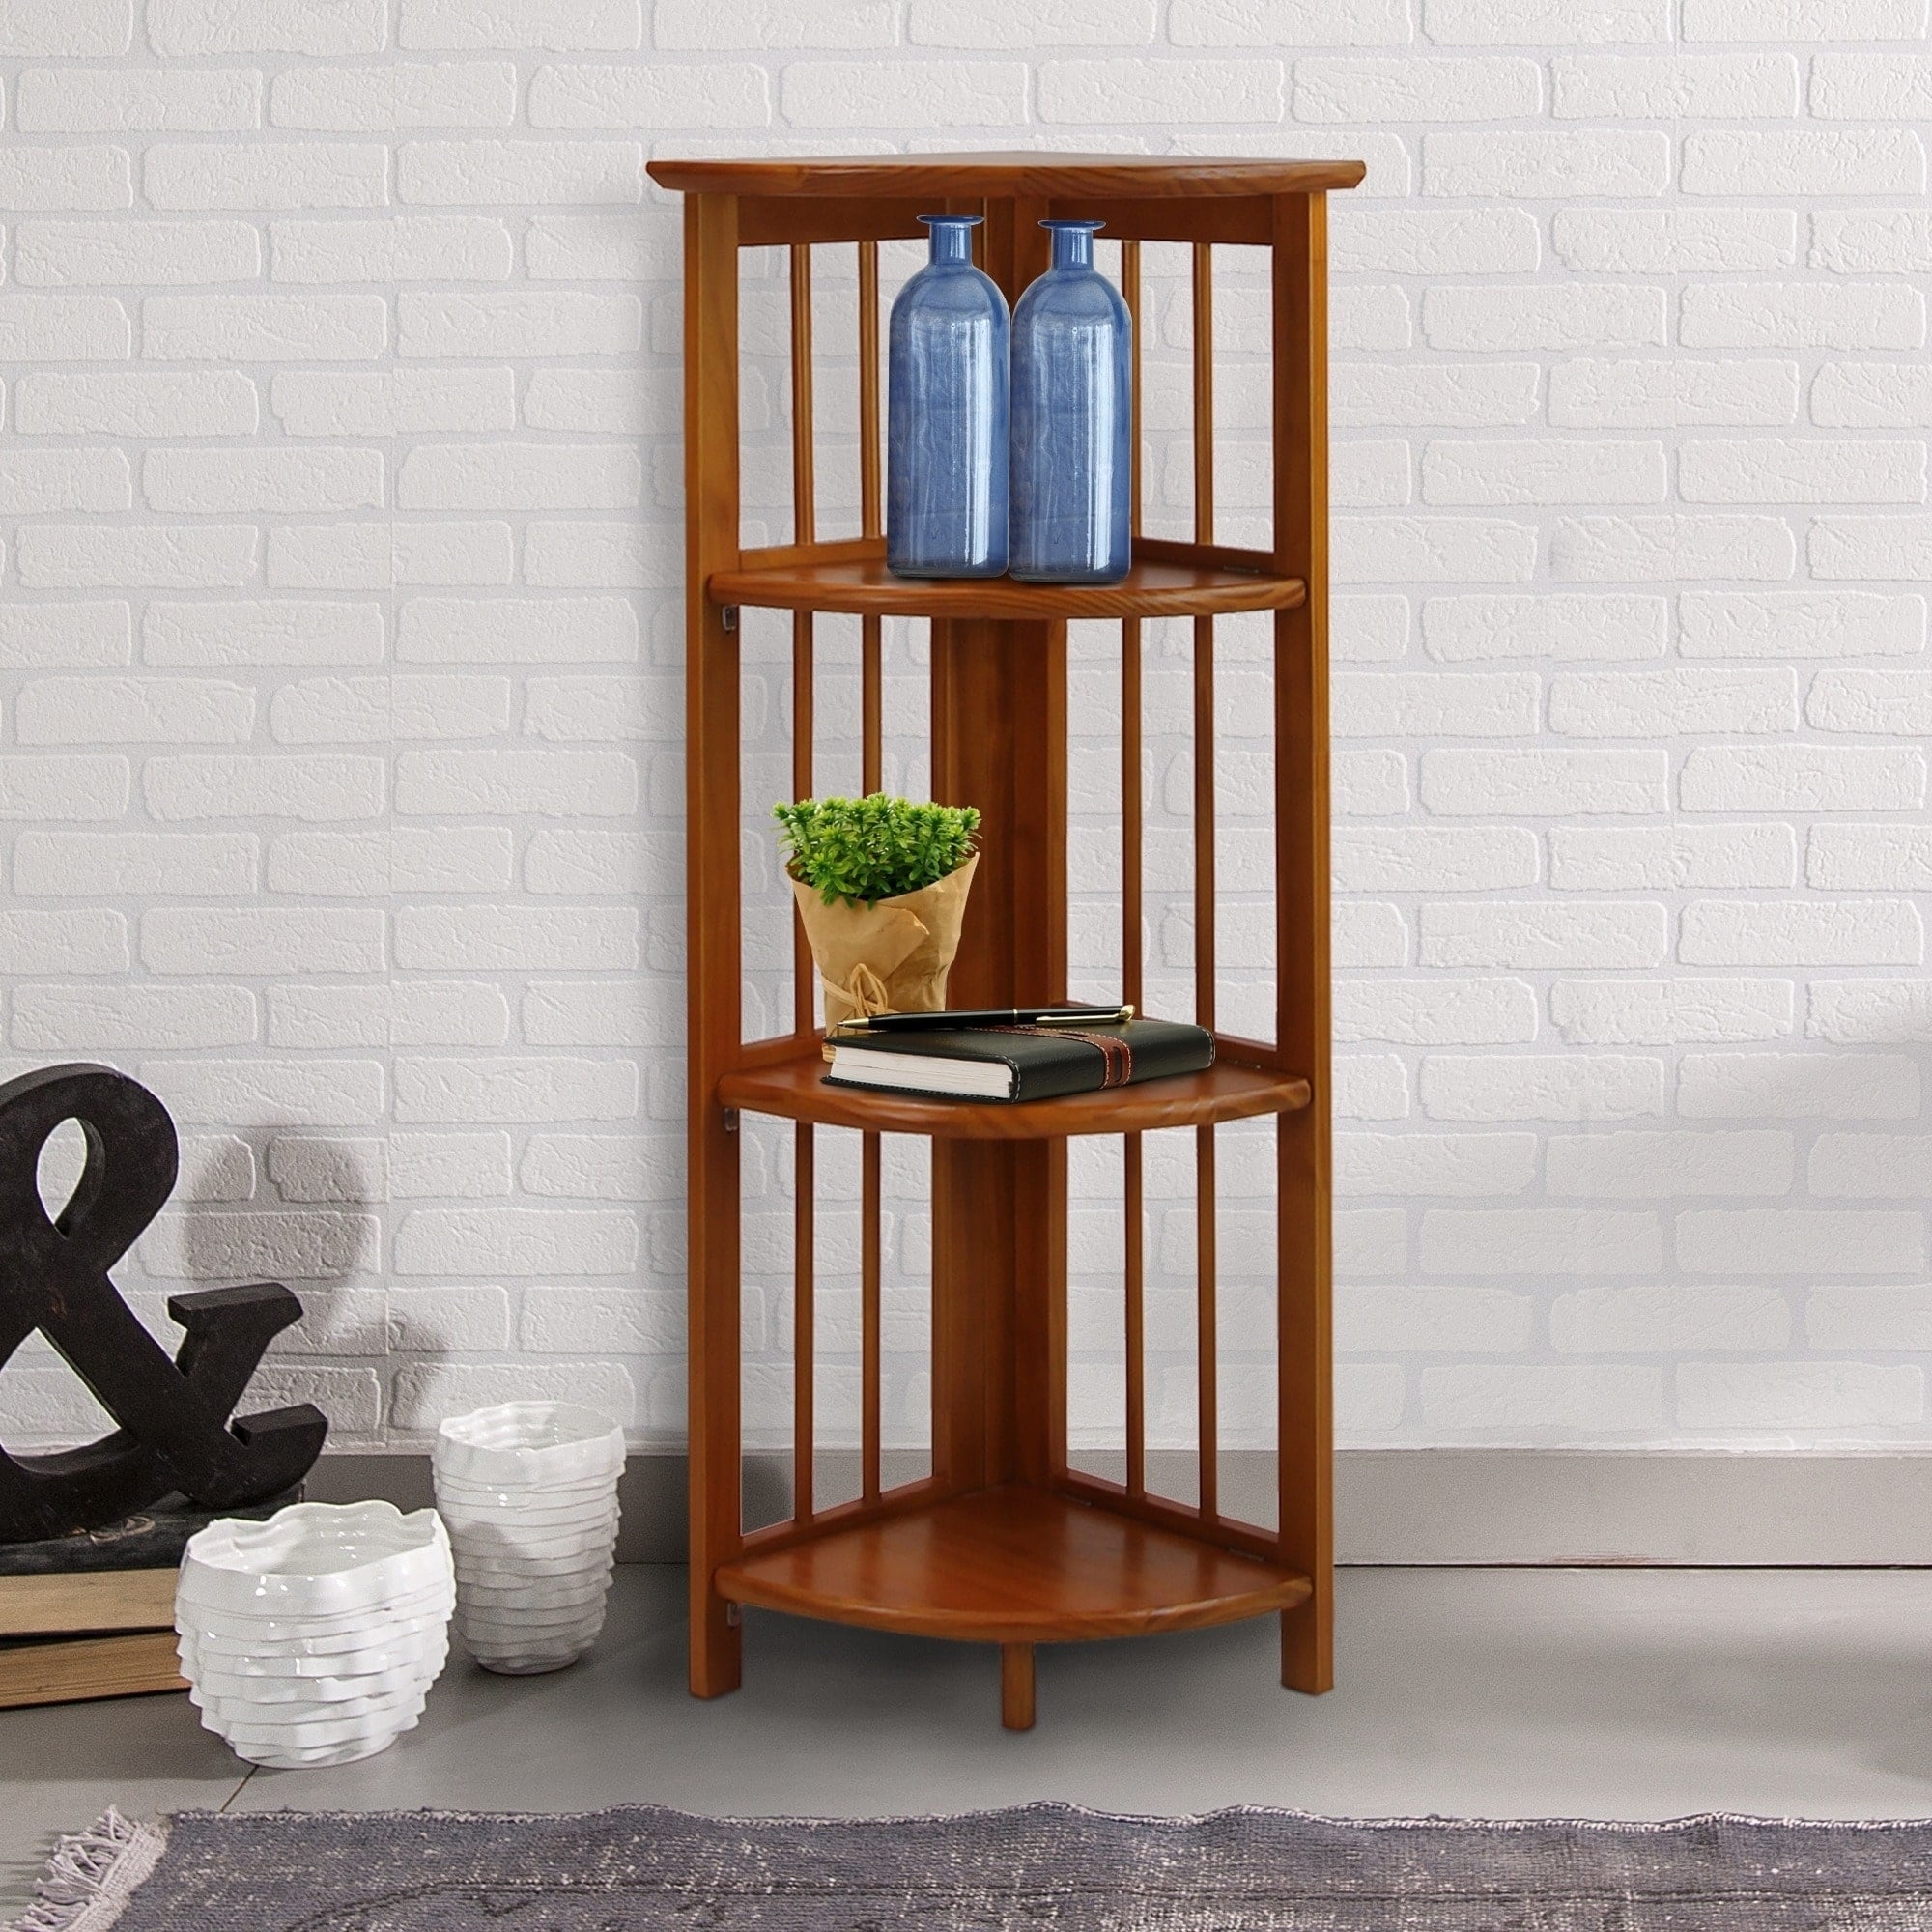 Yu Shan Co USA Ltd Mission 4-shelf Corner Folding Wood Bookcase - image 2 of 5